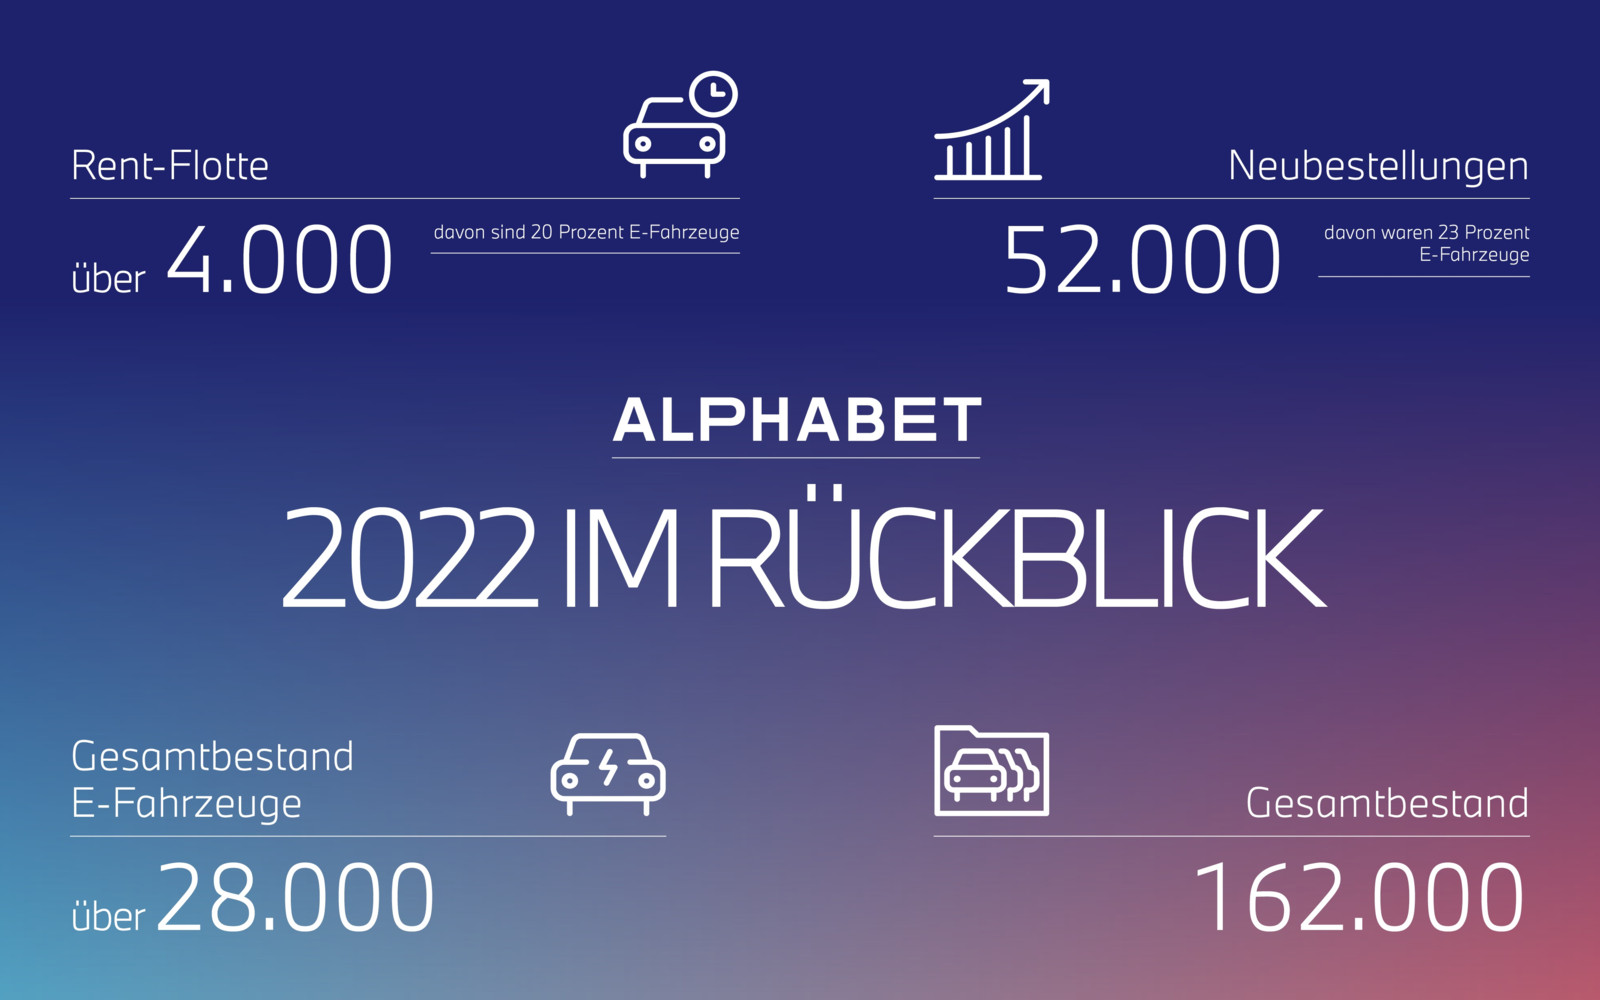 Der Alphabet-Gesamtbestand wuchs 2022 leicht um 1.000 auf jetzt 162.000 Fahrzeuge.